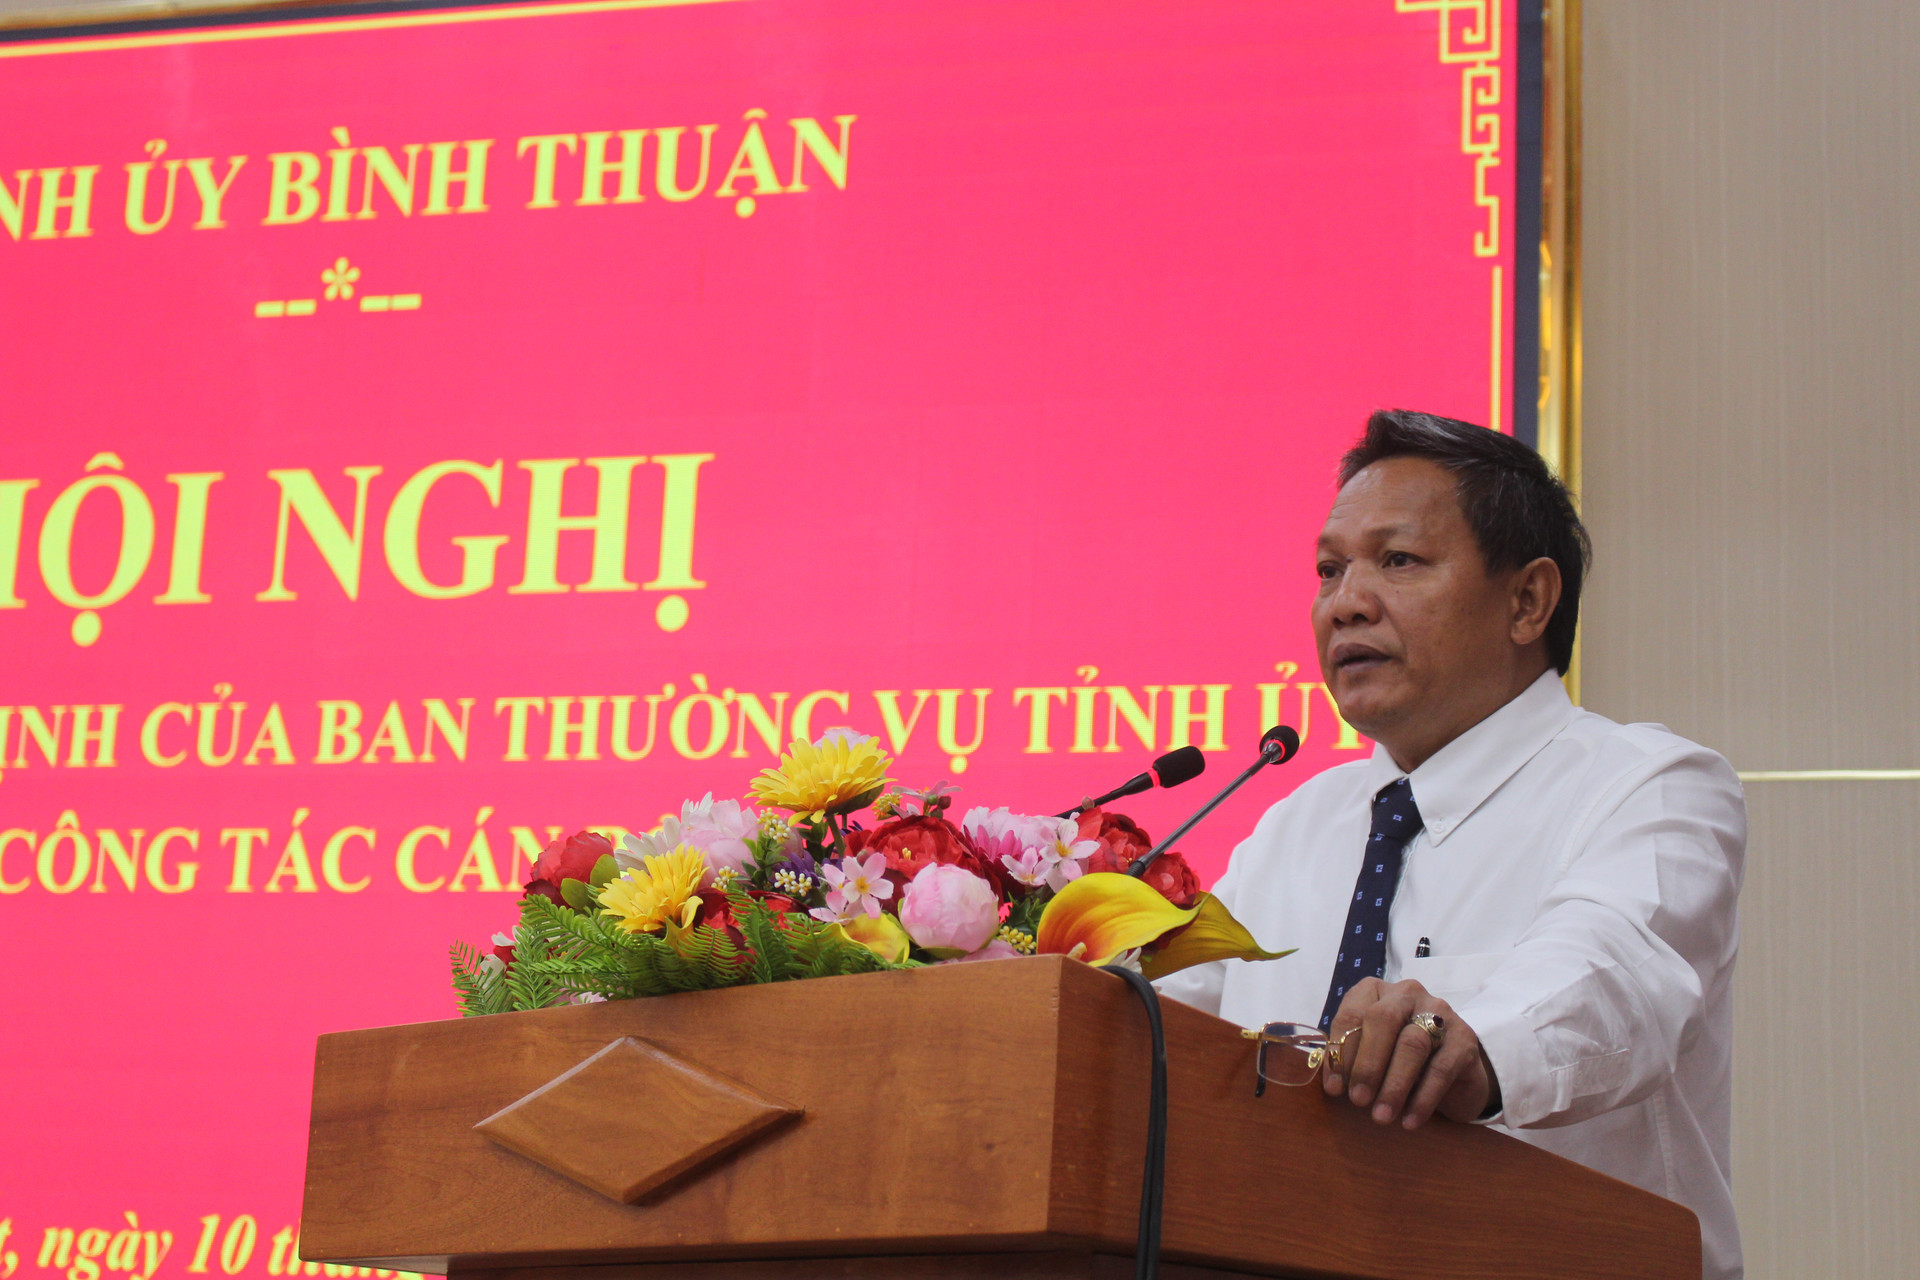 Bình Thuận: Bổ nhiệm ông Phạm Văn Nam làm Bí thư Thành ủy Thành phố Phan Thiết - Ảnh 2.